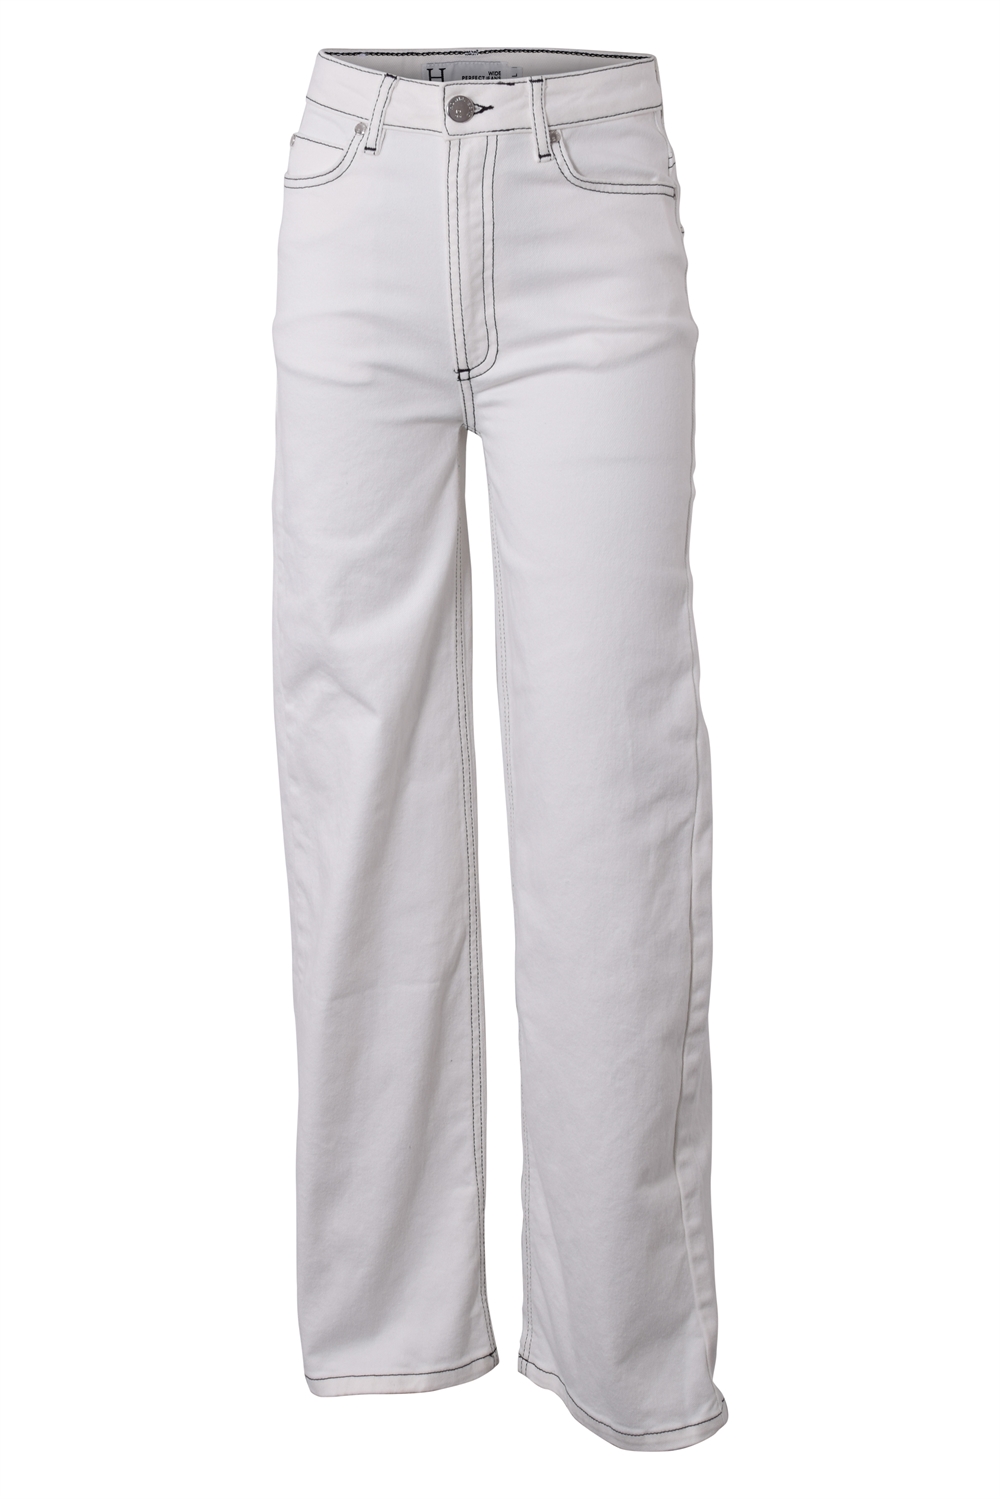 Køb Hound jeans (højtaljet) pige hvid